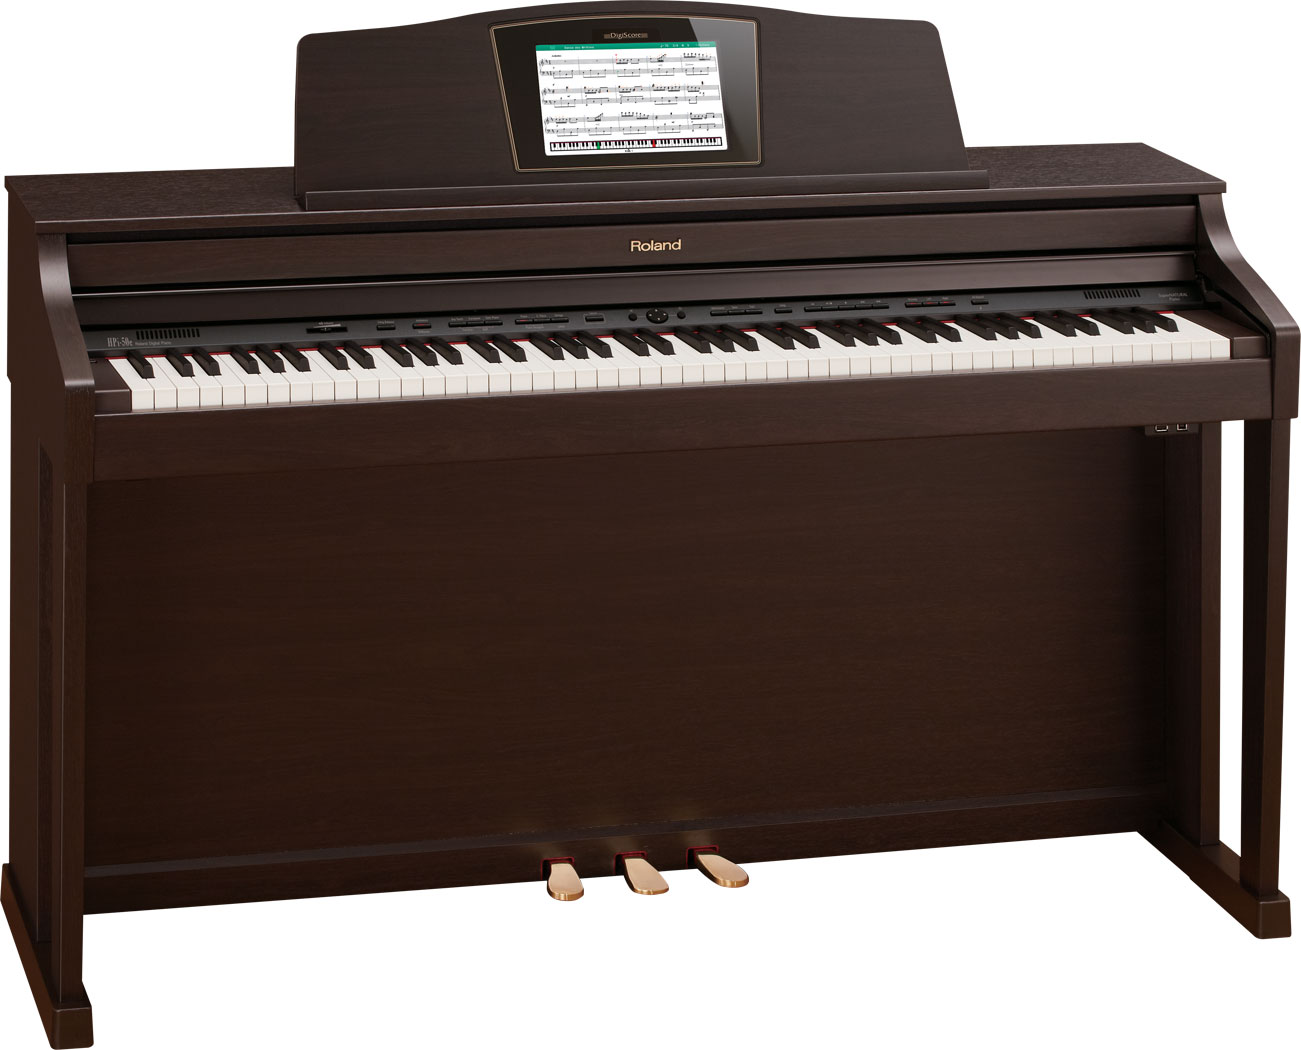 電子ピアノ】Roland「HPi-50」ららぽーと甲子園店にてお試し可能です 